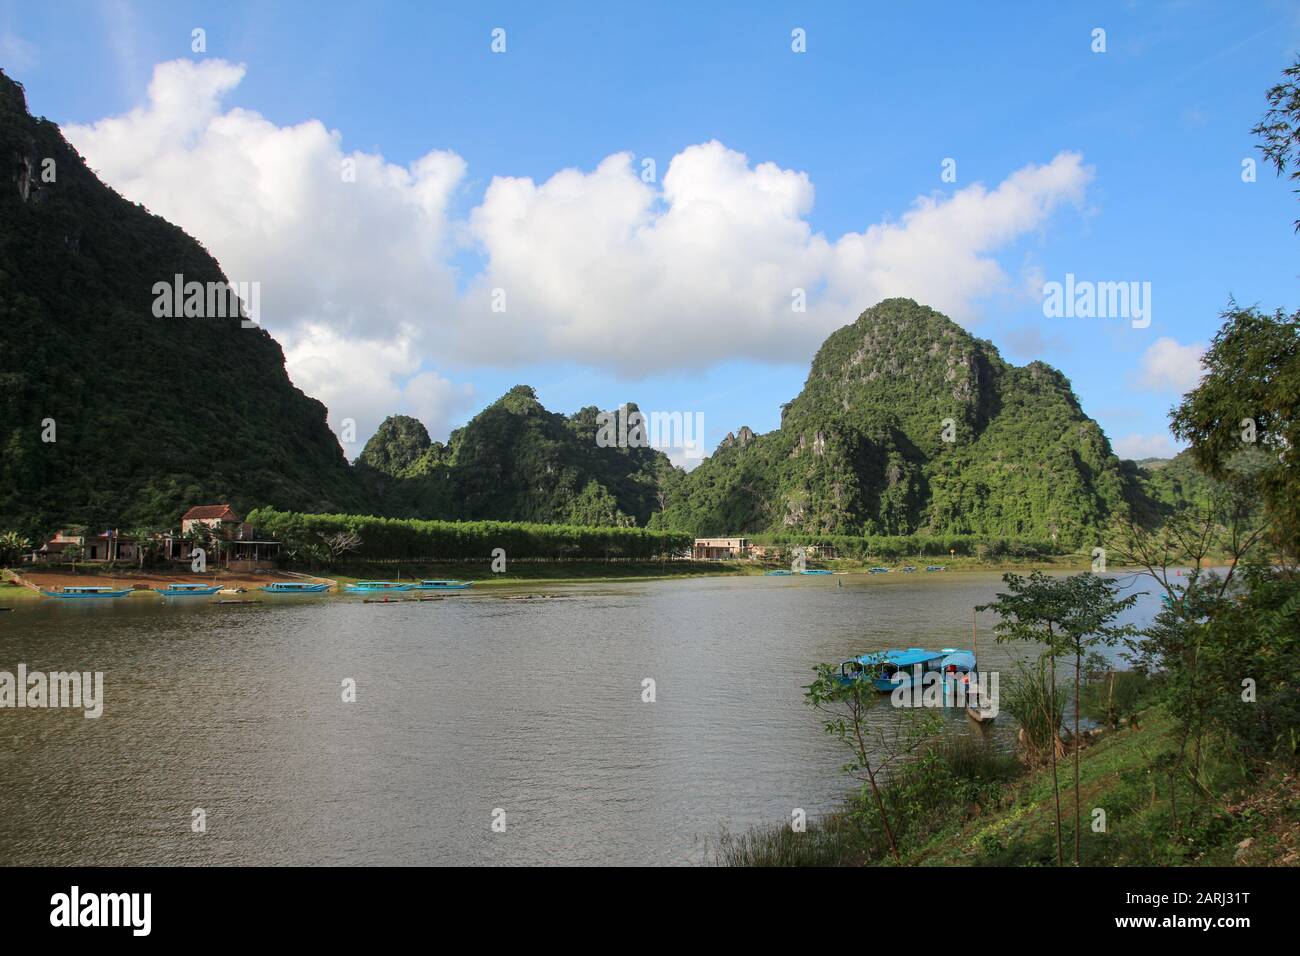 The beautiful Phong Nha Ke Bang National Park in central Vietnam Stock Photo